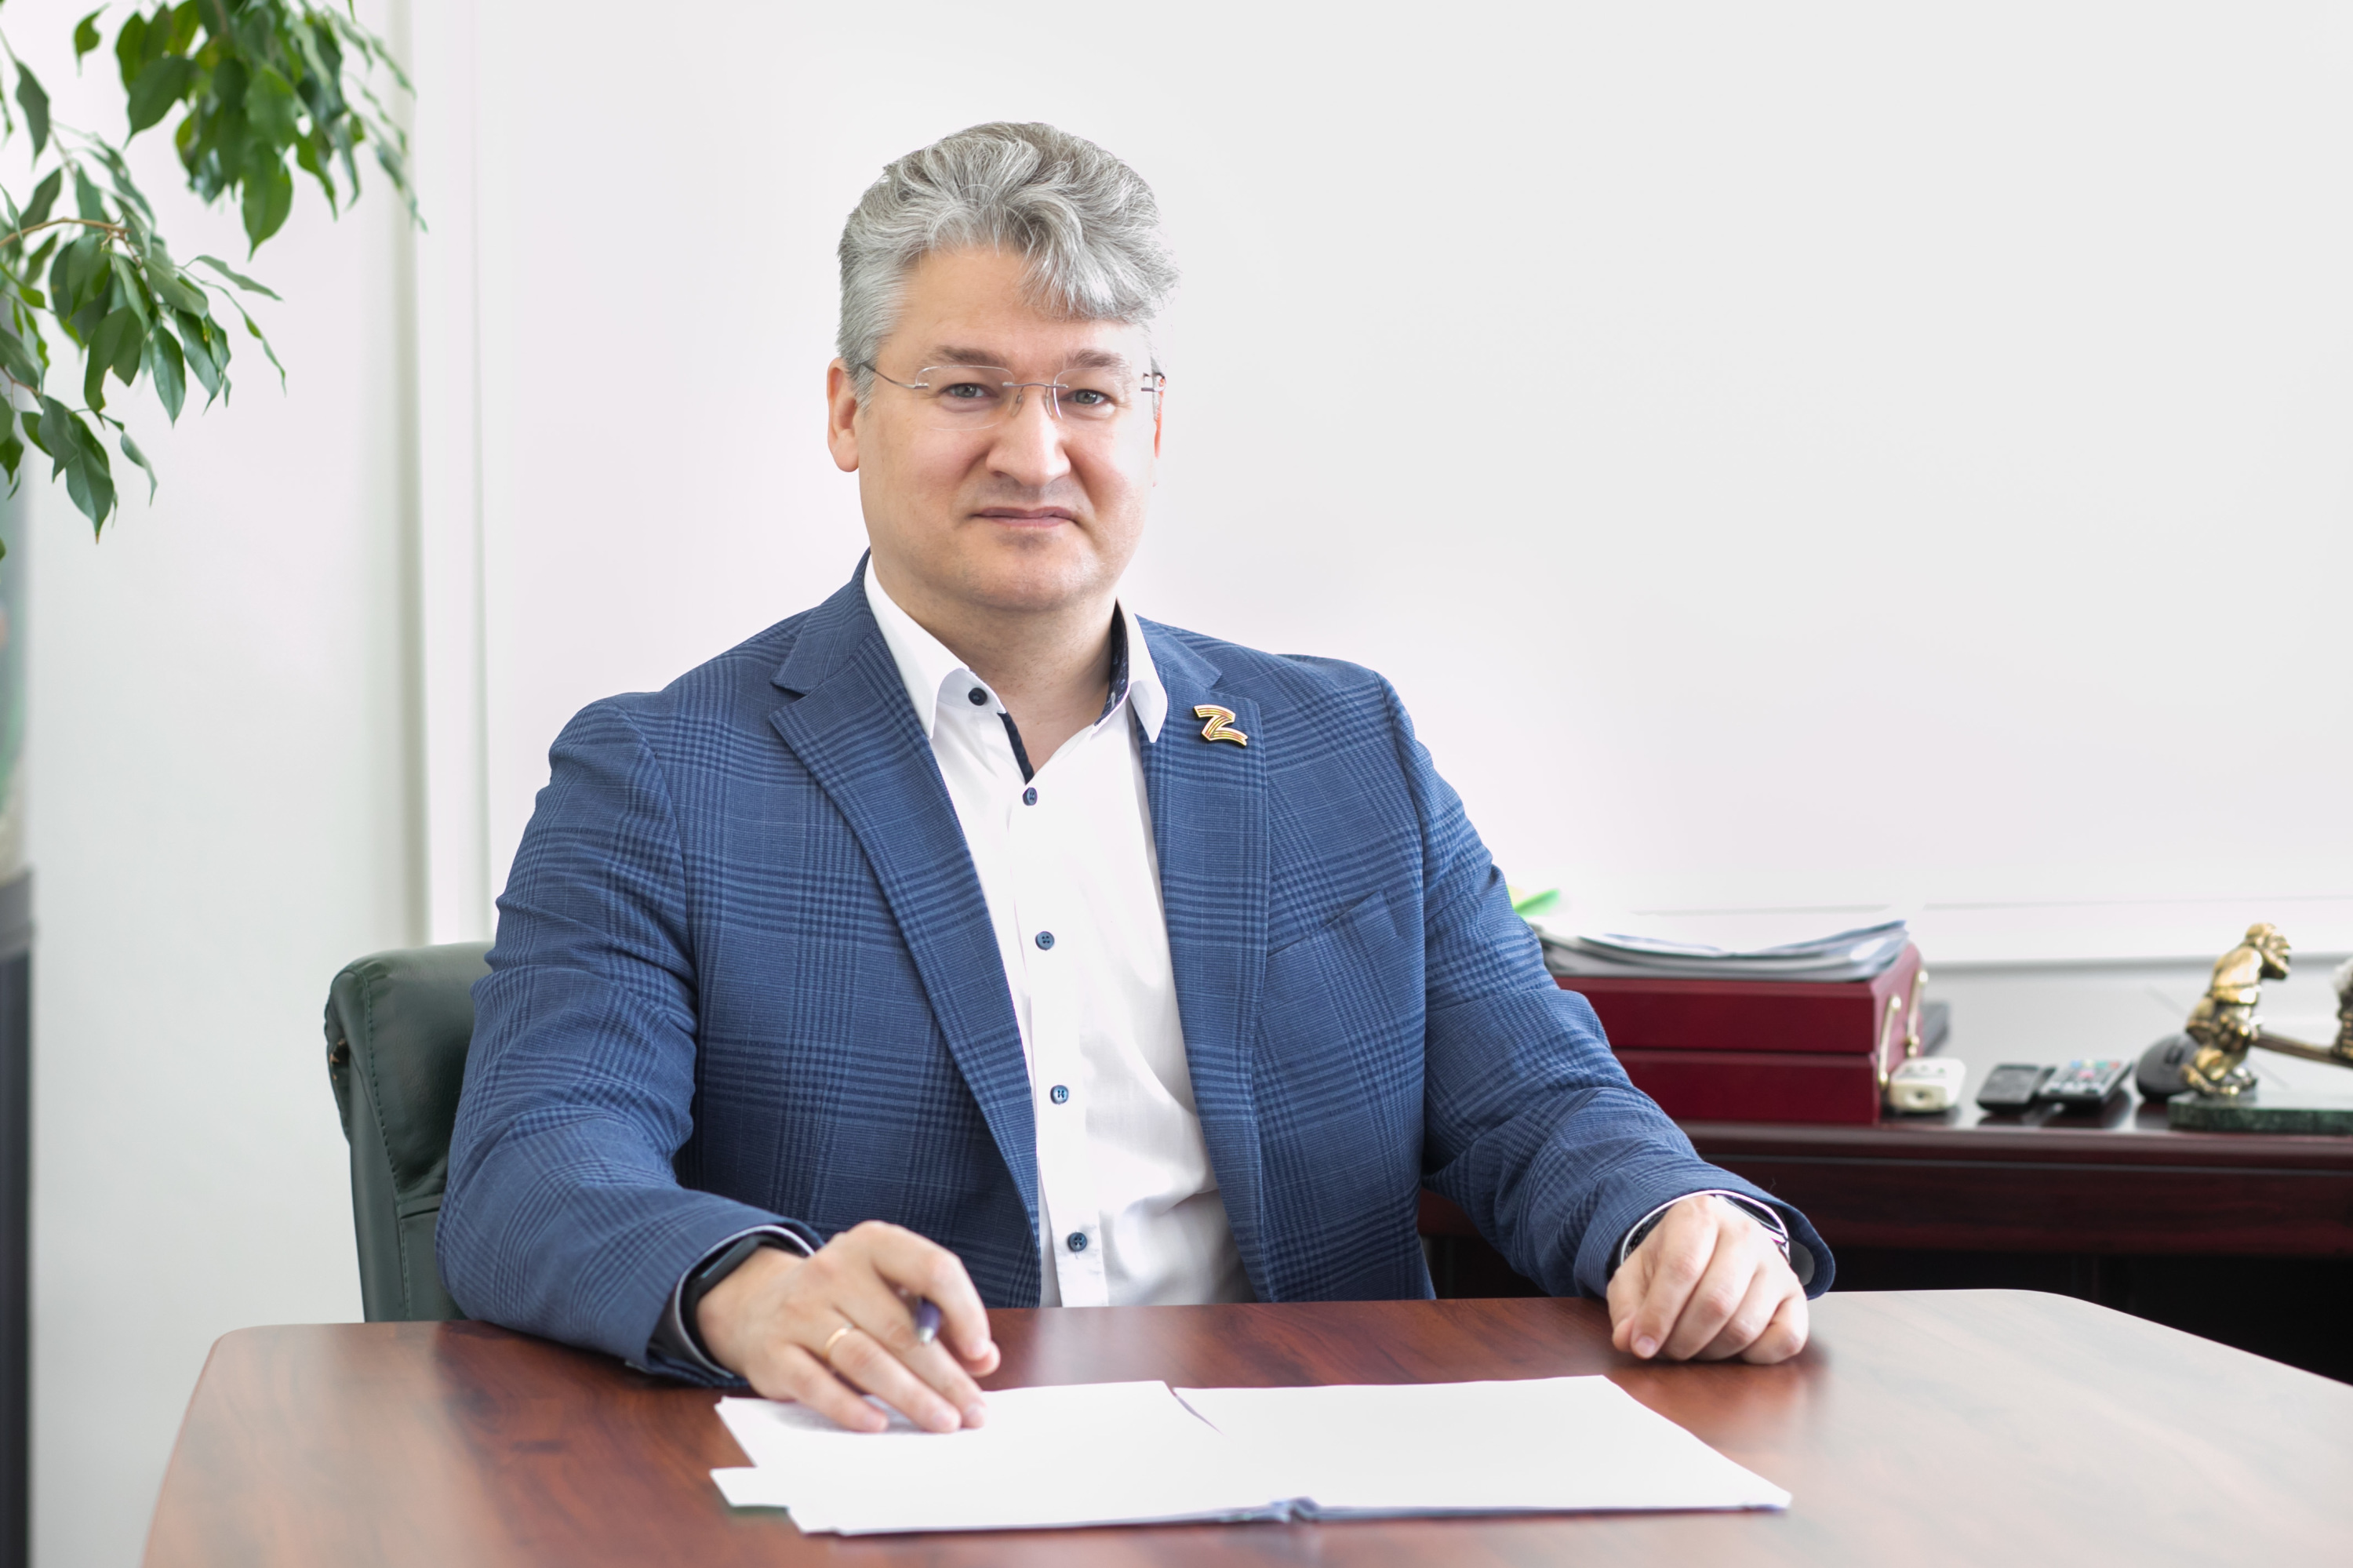 Замгубернатора Кузбасса по экологии и энергетики освобожден от своей должности. Он ушел на повышение